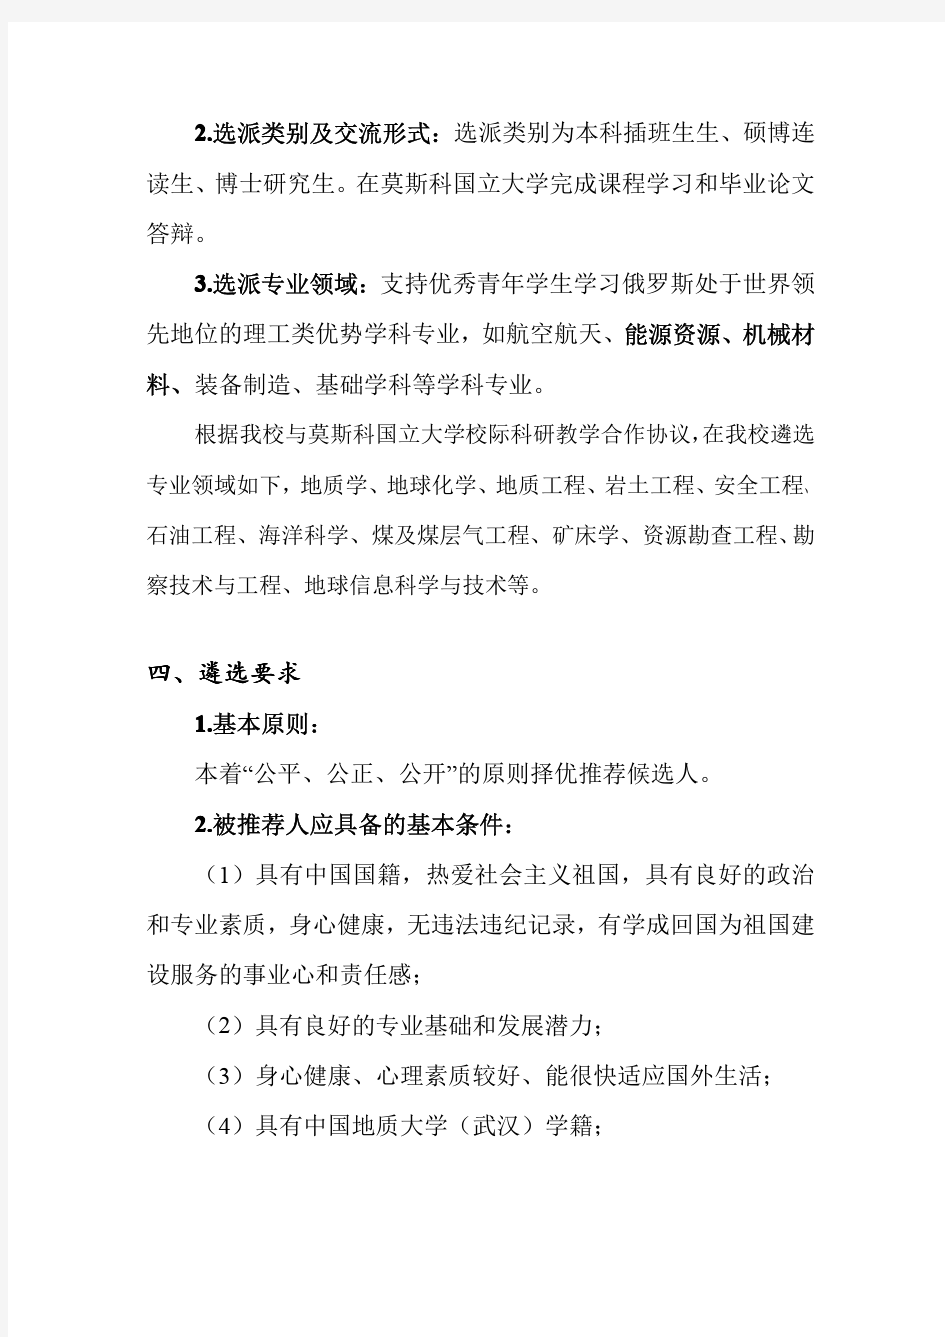 中国地质大学(武汉)赴俄专业人才培养项目2013年实施规划(草案)